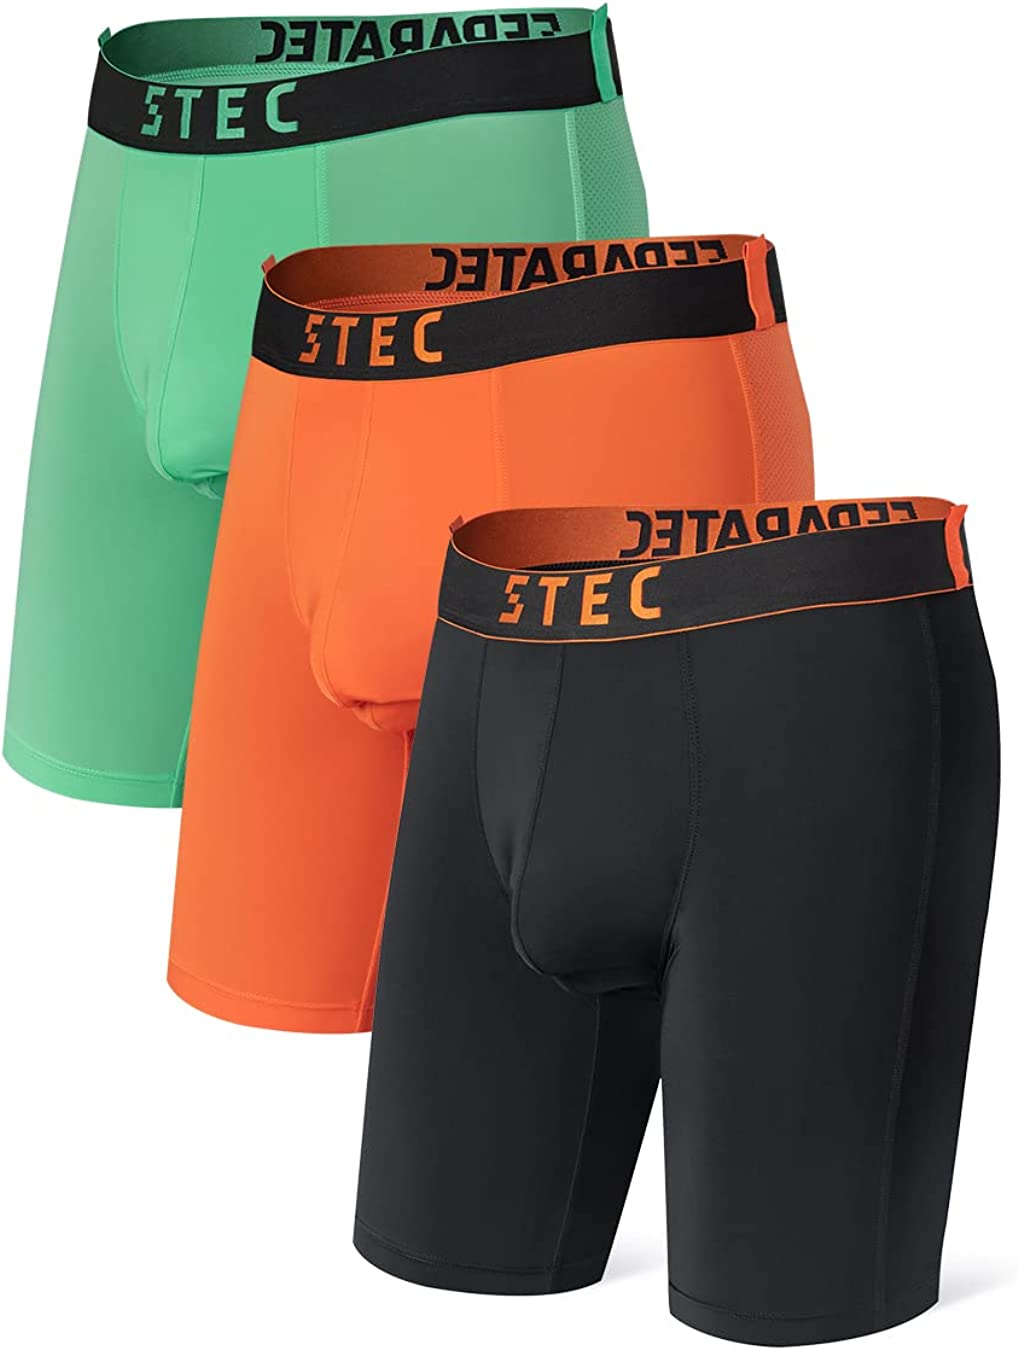 Separatec Men's Dual Pouch Underwear Sports Quick Dry Lightweight  Performance Boxer Briefs Camo Long Leg 2/3 Pack(M-L,Black/Reddish Violet)